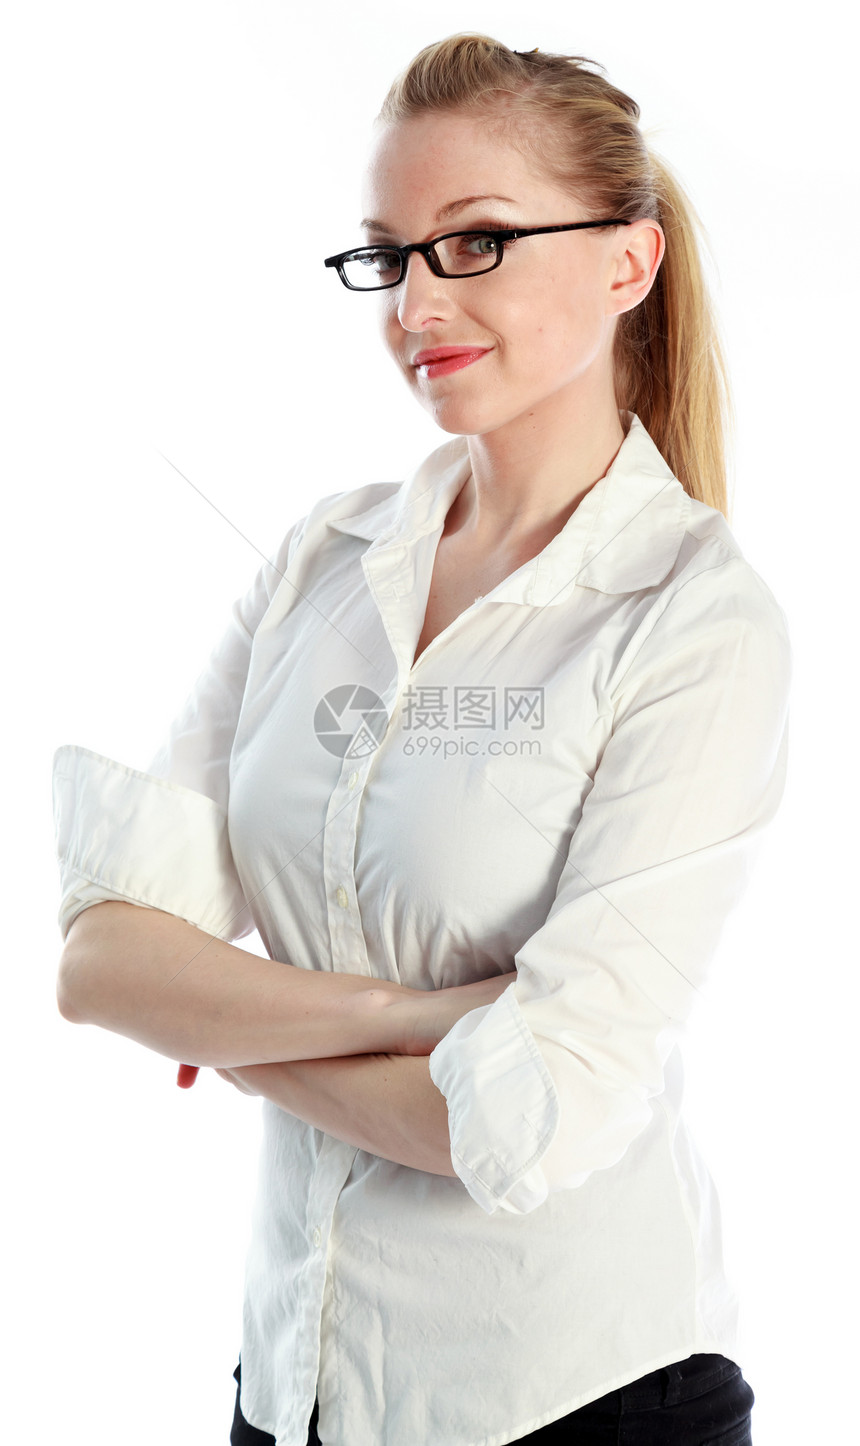 30岁有魅力的caucasian金发美女商务眼镜冒充女性长发人士休闲服白色腰部衬衫图片